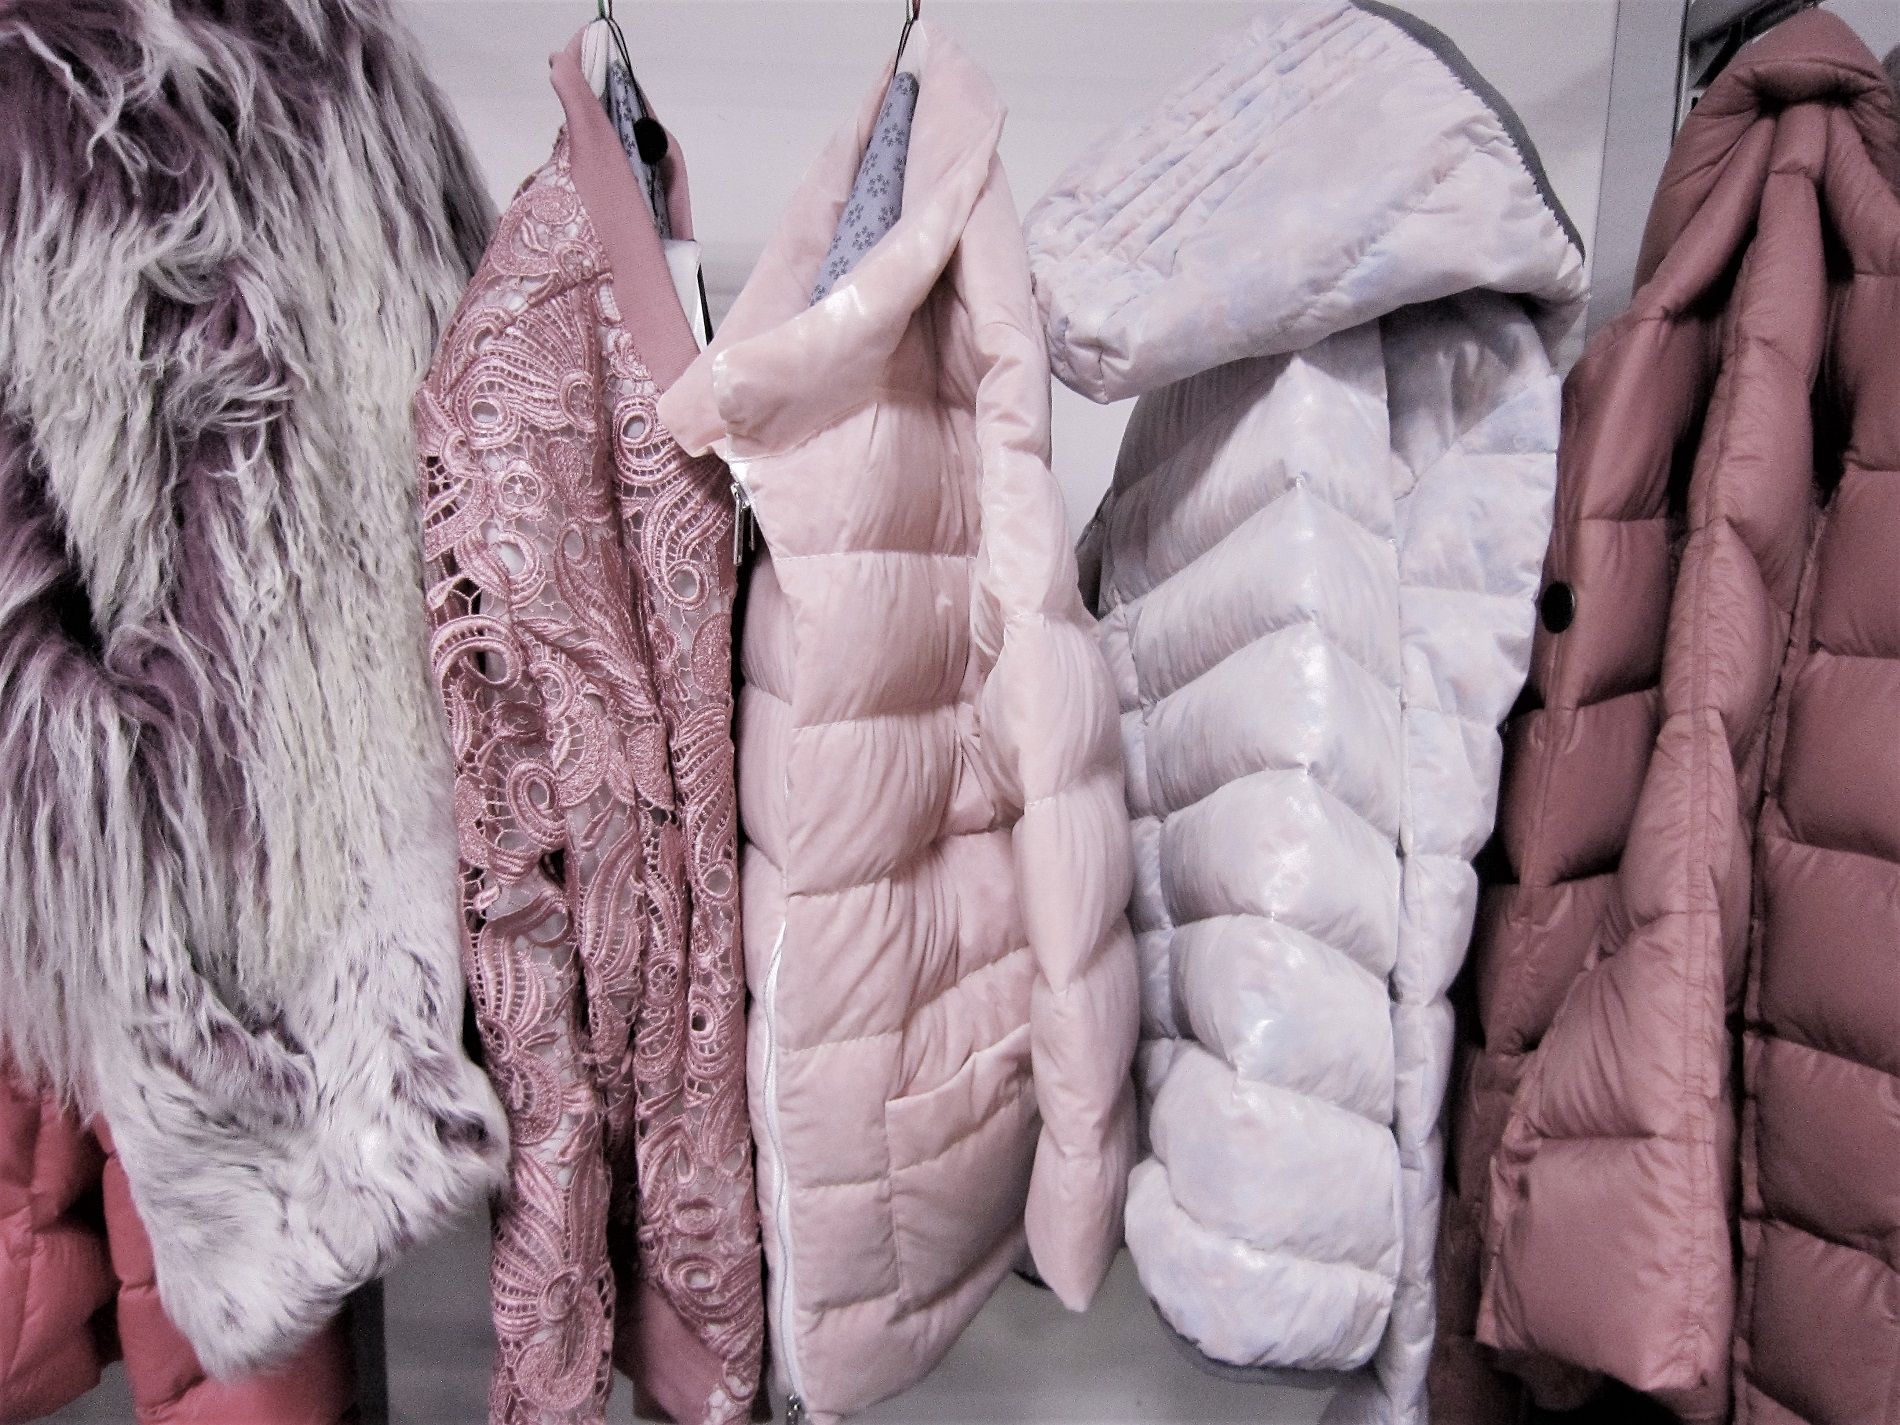 Cappotti o piumini, cosa scegliere per l’inverno 2018